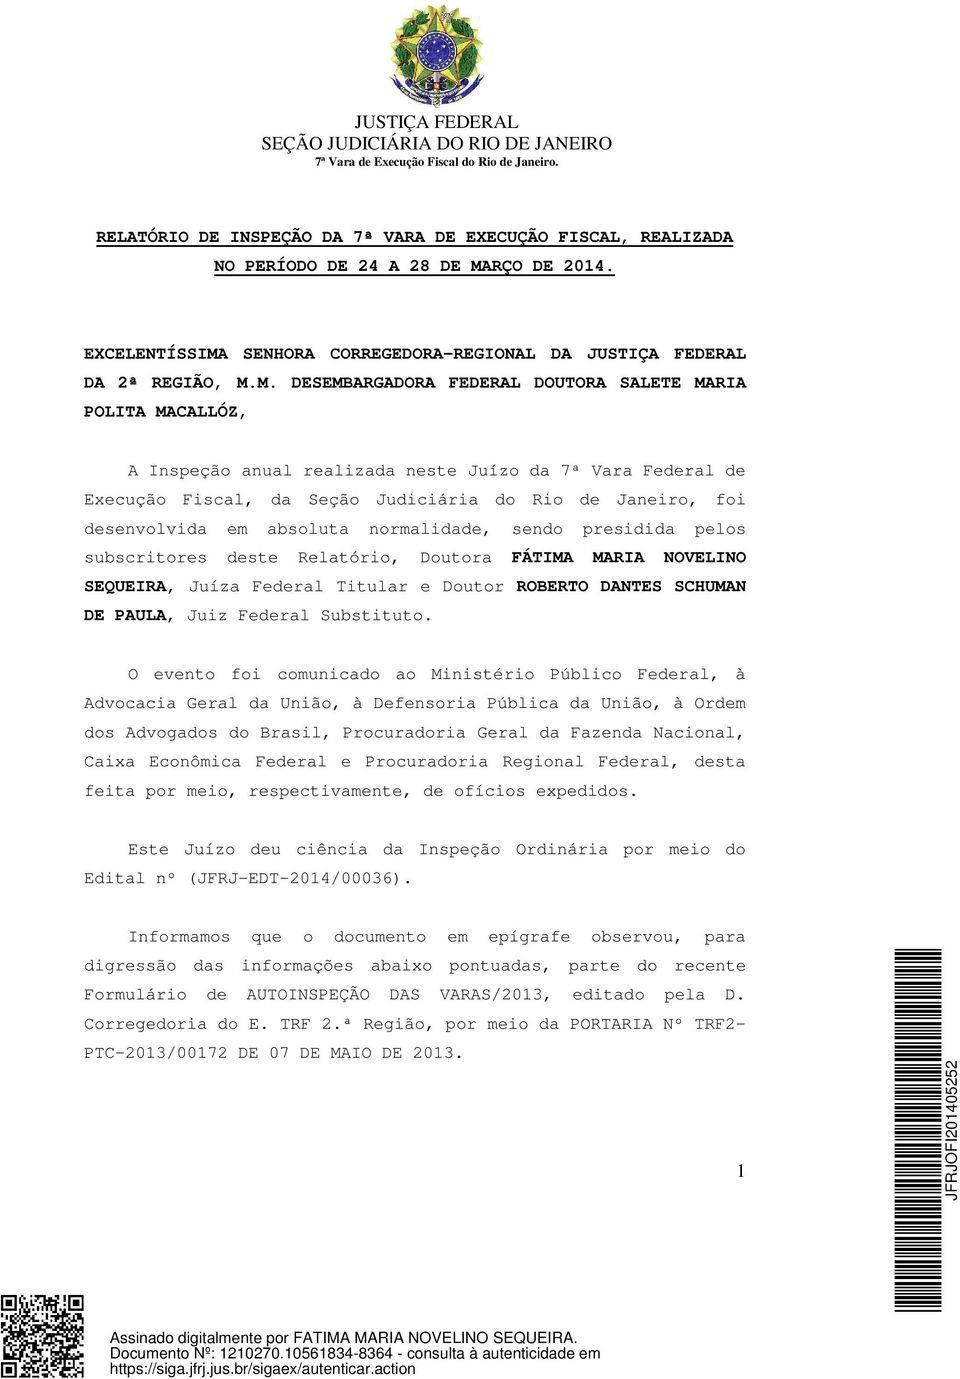 SENHORA CORREGEDORA-REGIONAL DA JUSTIÇA FEDERAL DA 2ª REGIÃO, M.